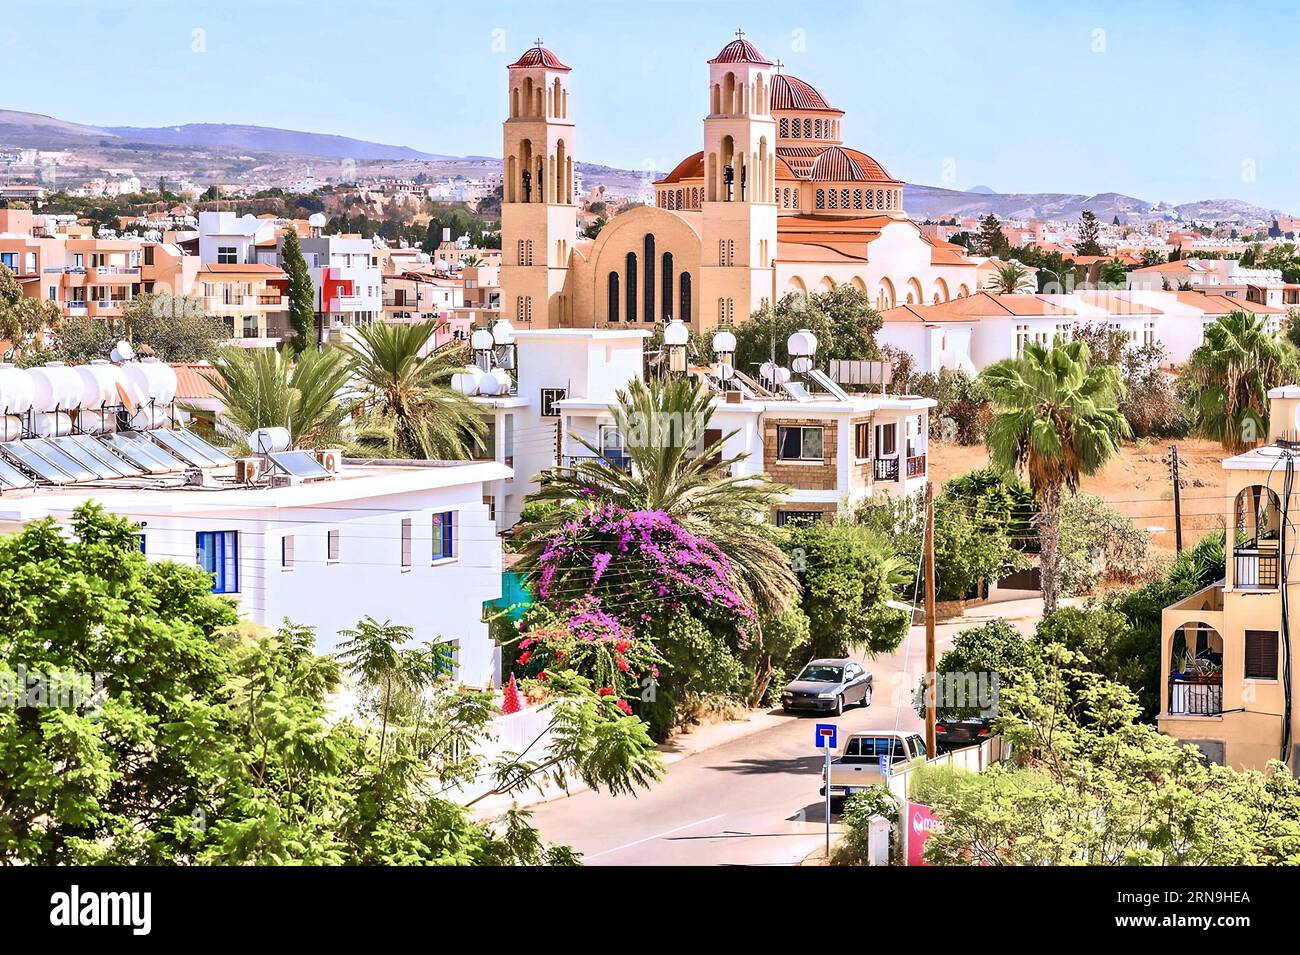 Blick auf die Stadt Paphos in Zypern. Paphos ist als Zentrum der antiken Geschichte und Kultur der Insel bekannt. Stockfoto